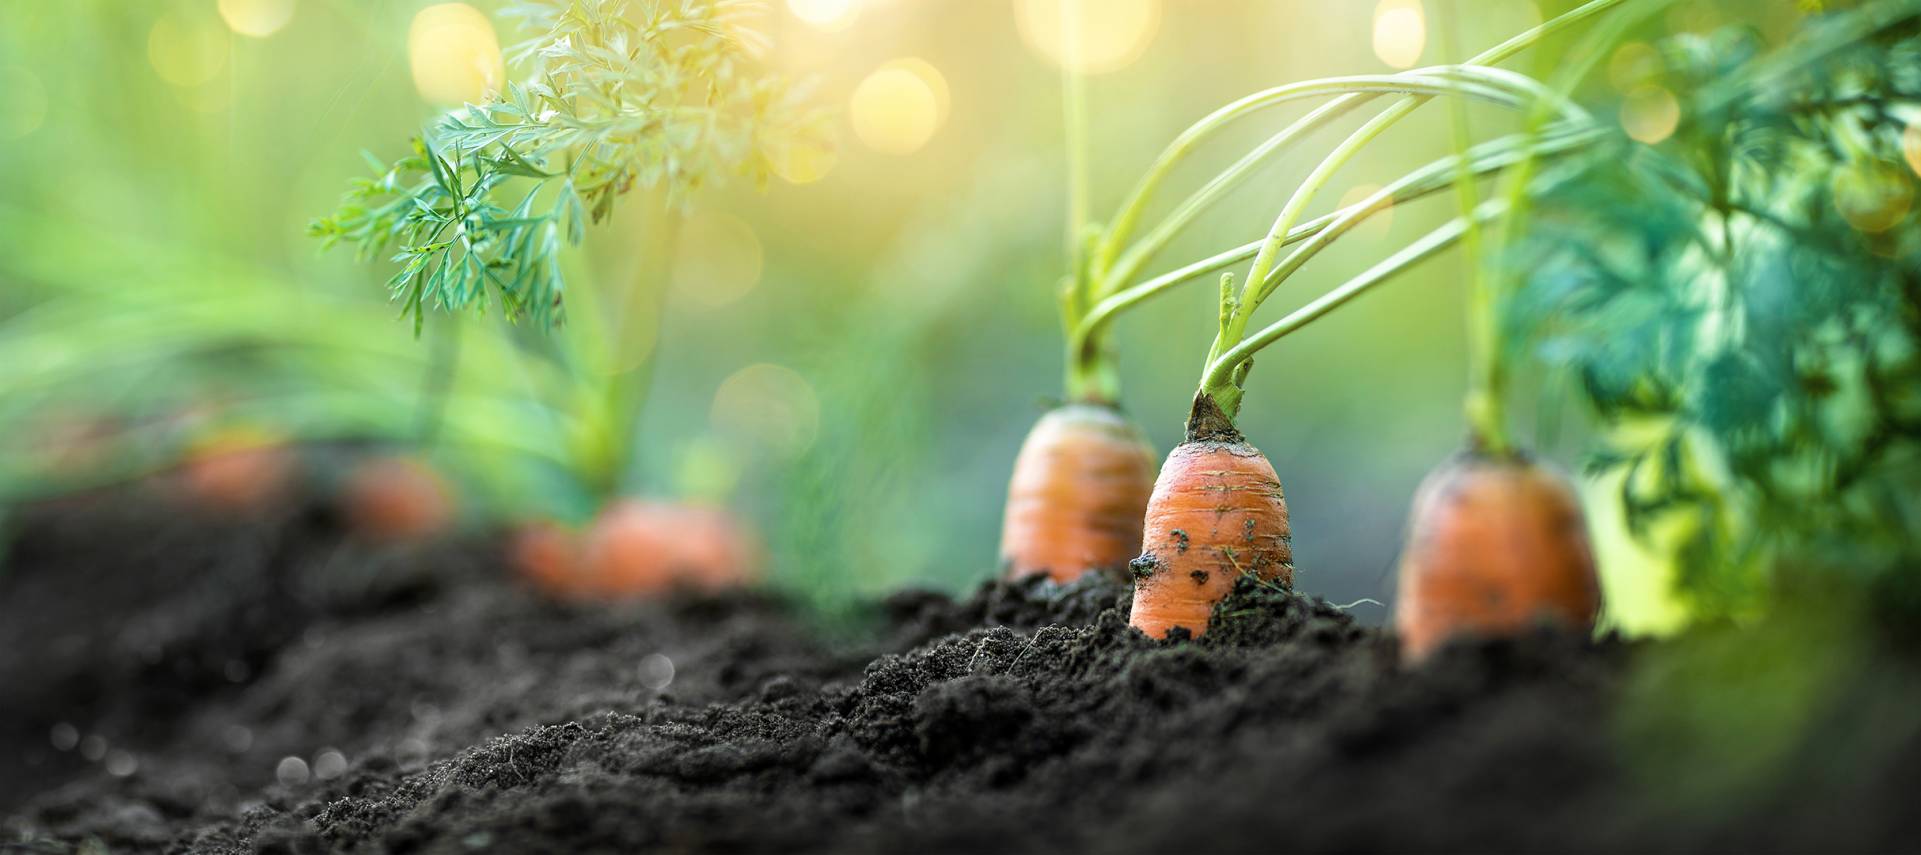 Carrots growing in rich soil